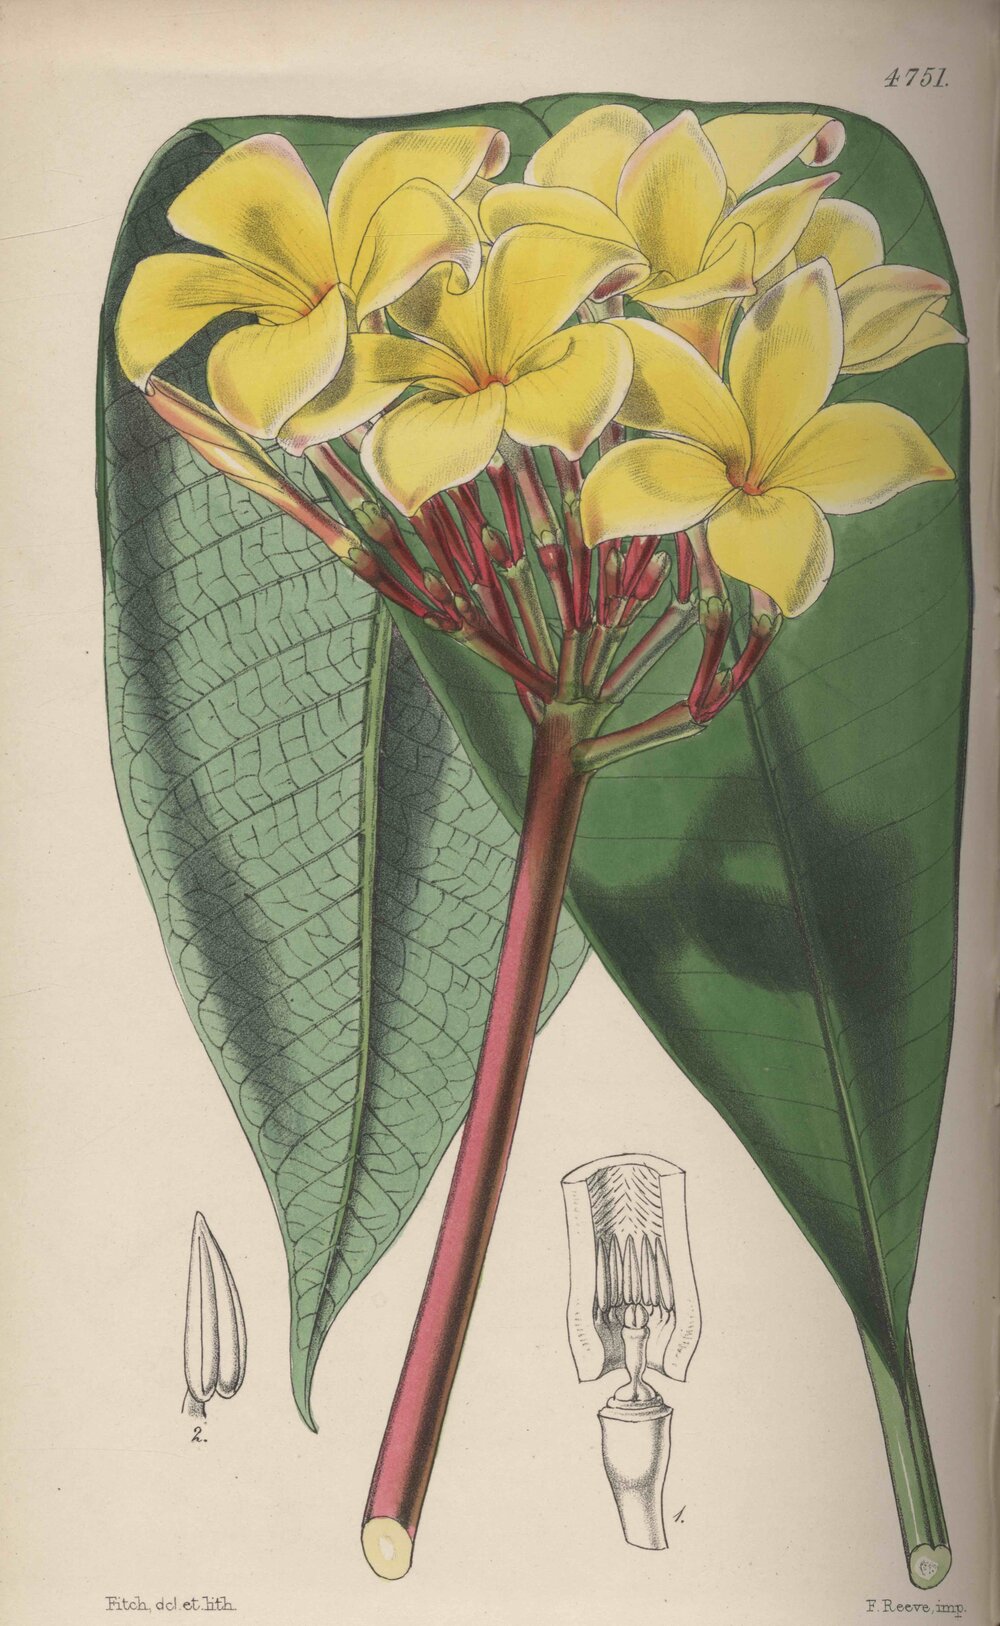 Plumieria Jamesoni Hook. t. 4751 (Hooker, 1853)